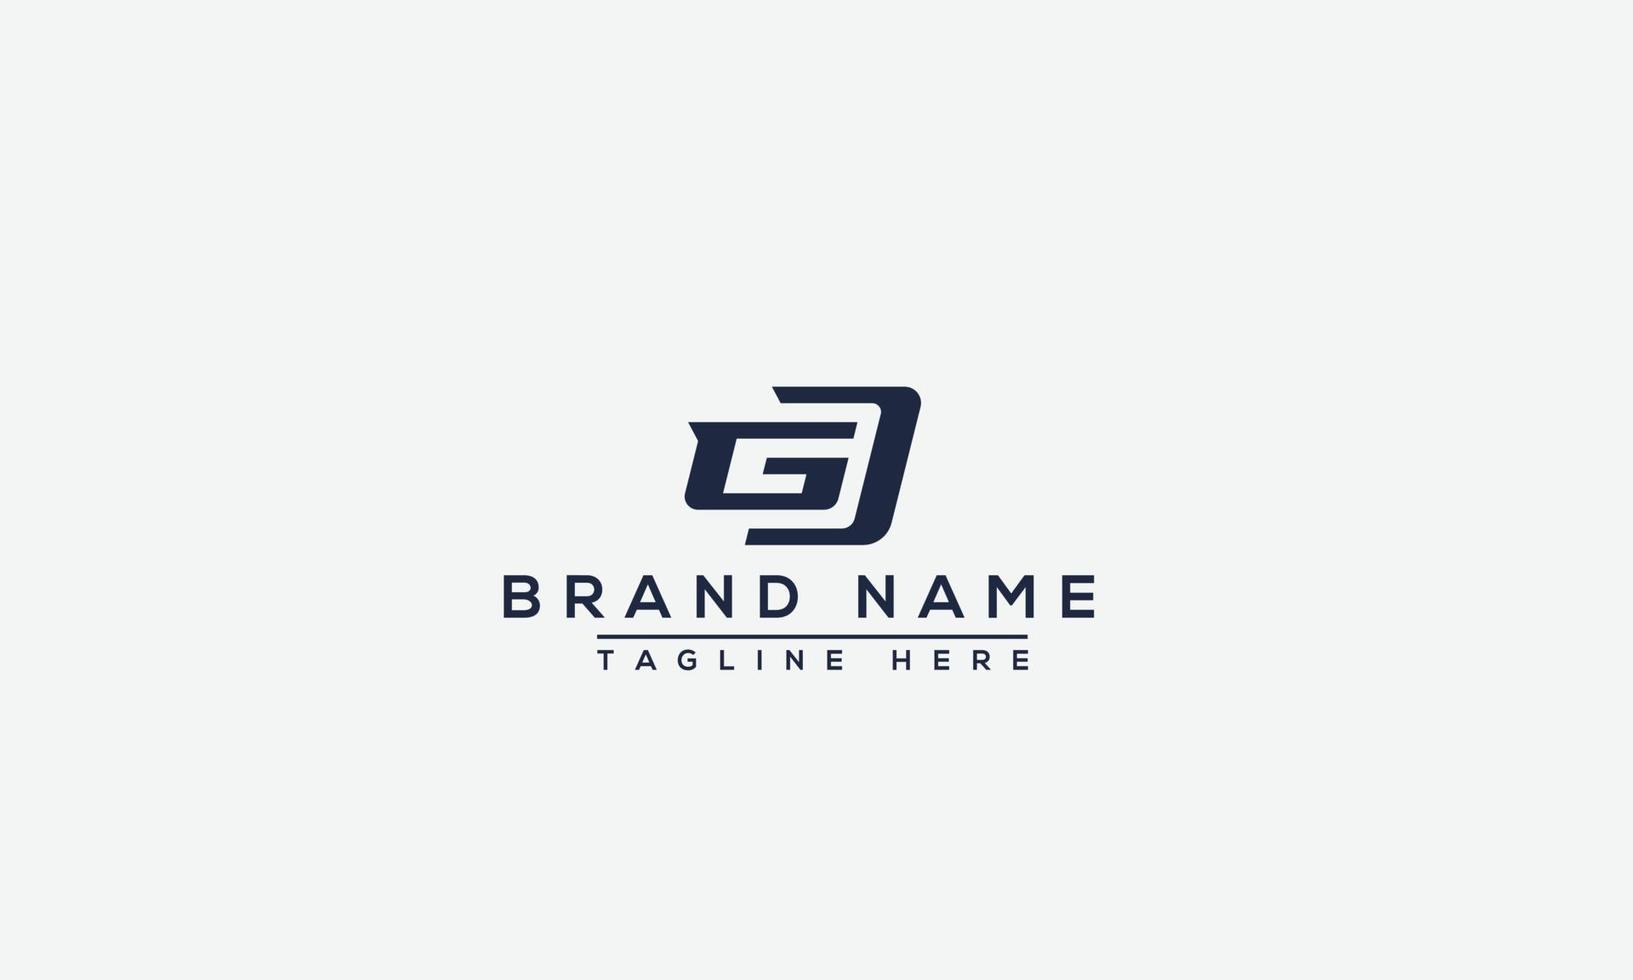 elemento de marca gráfico vectorial de plantilla de diseño de logotipo gd. vector